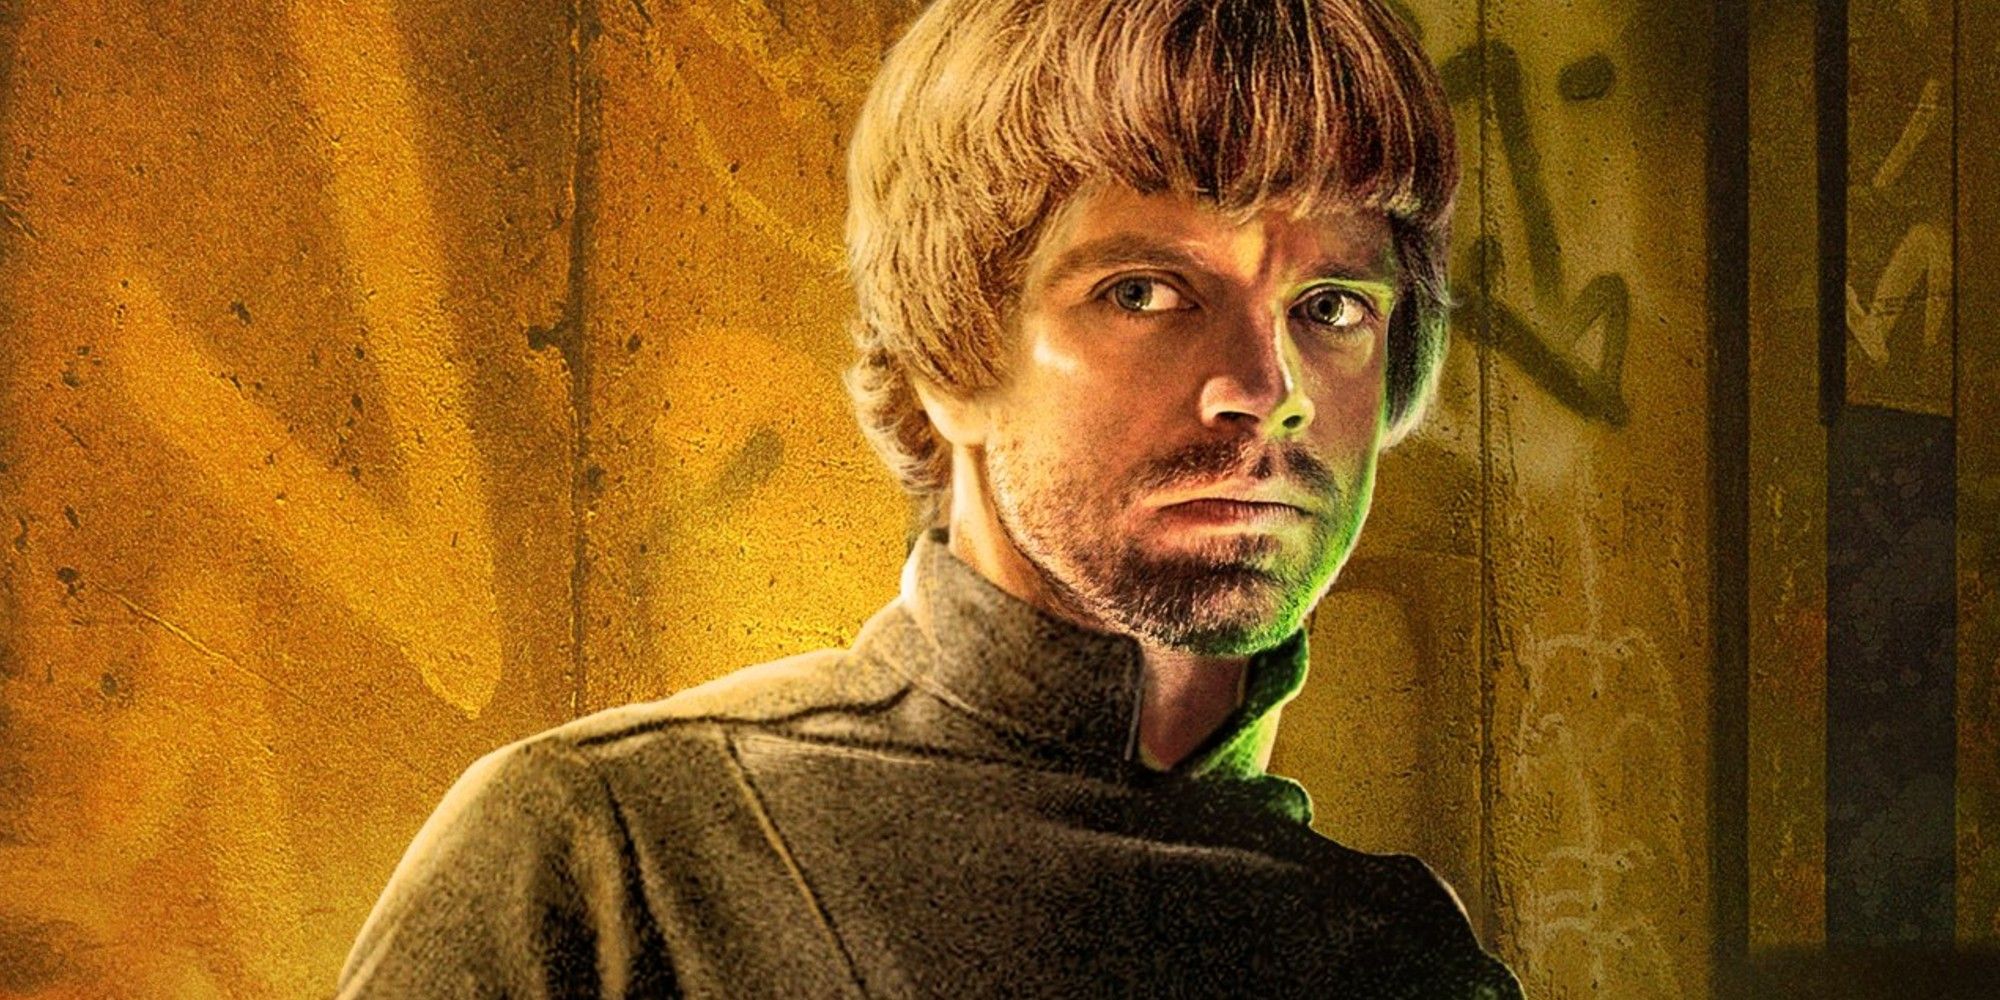 Sebastian Stan as Luke Skywalker Mandalorian fan poster